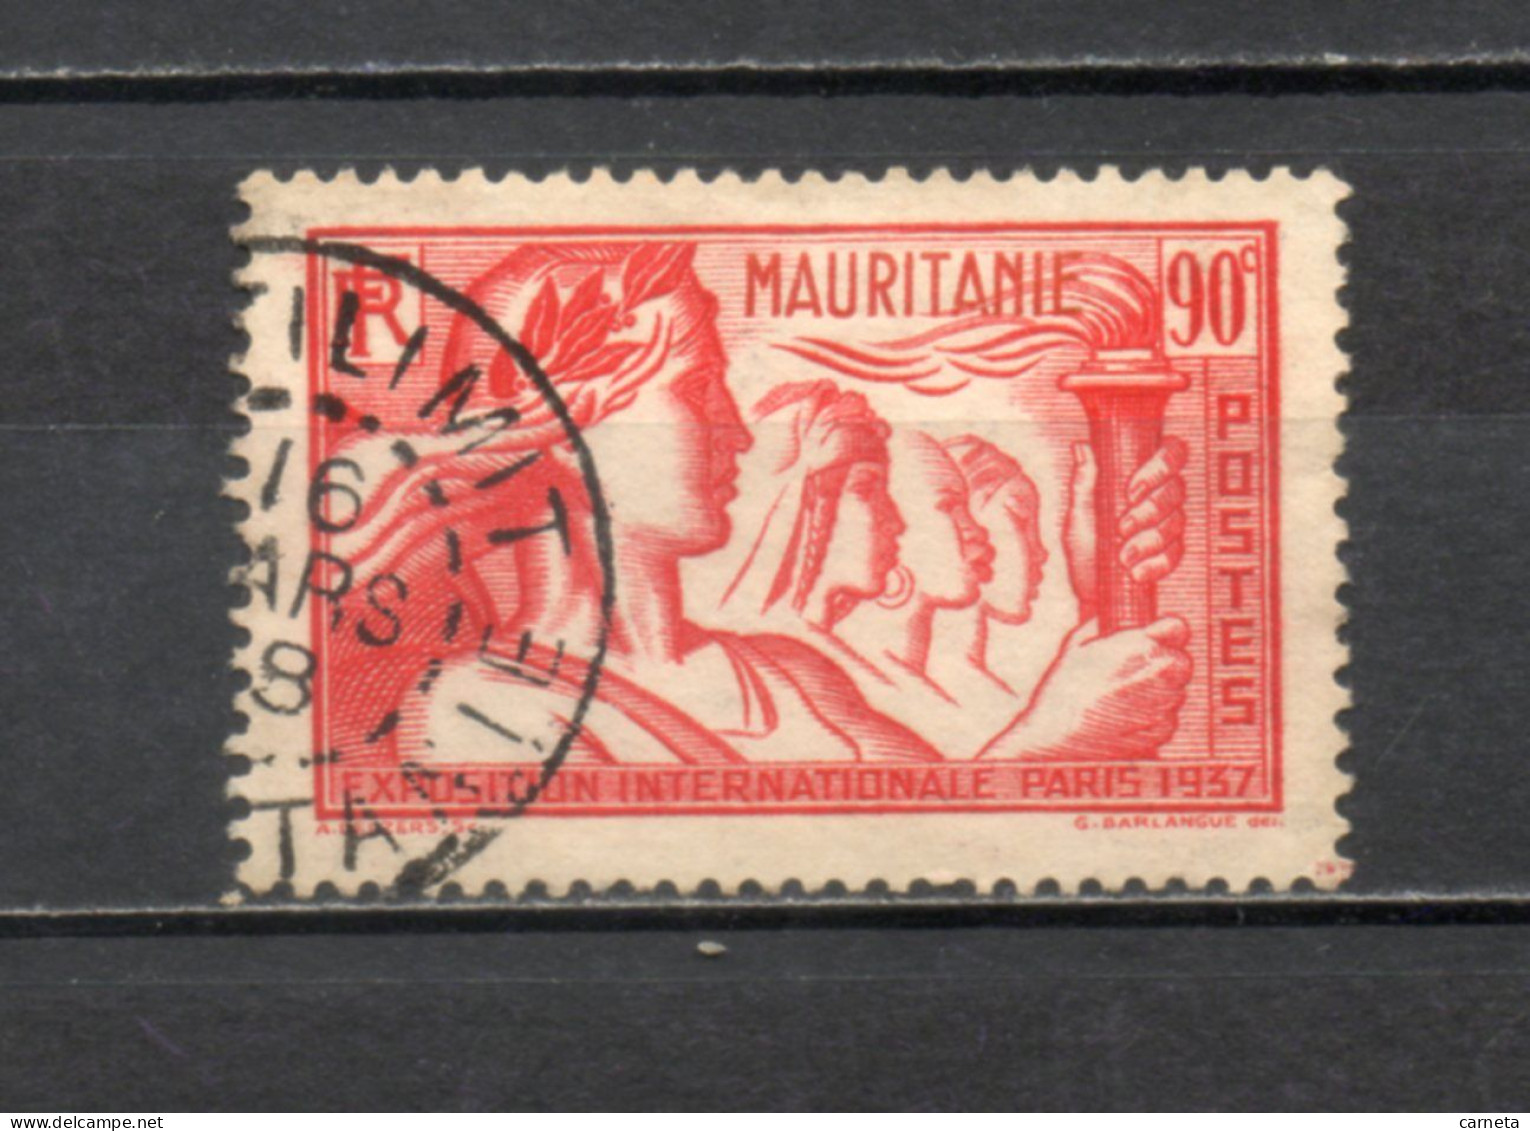 MAURITANIE  N° 70   OBLITERE    COTE 2.00€     EXPOSITION DE PARIS - Used Stamps